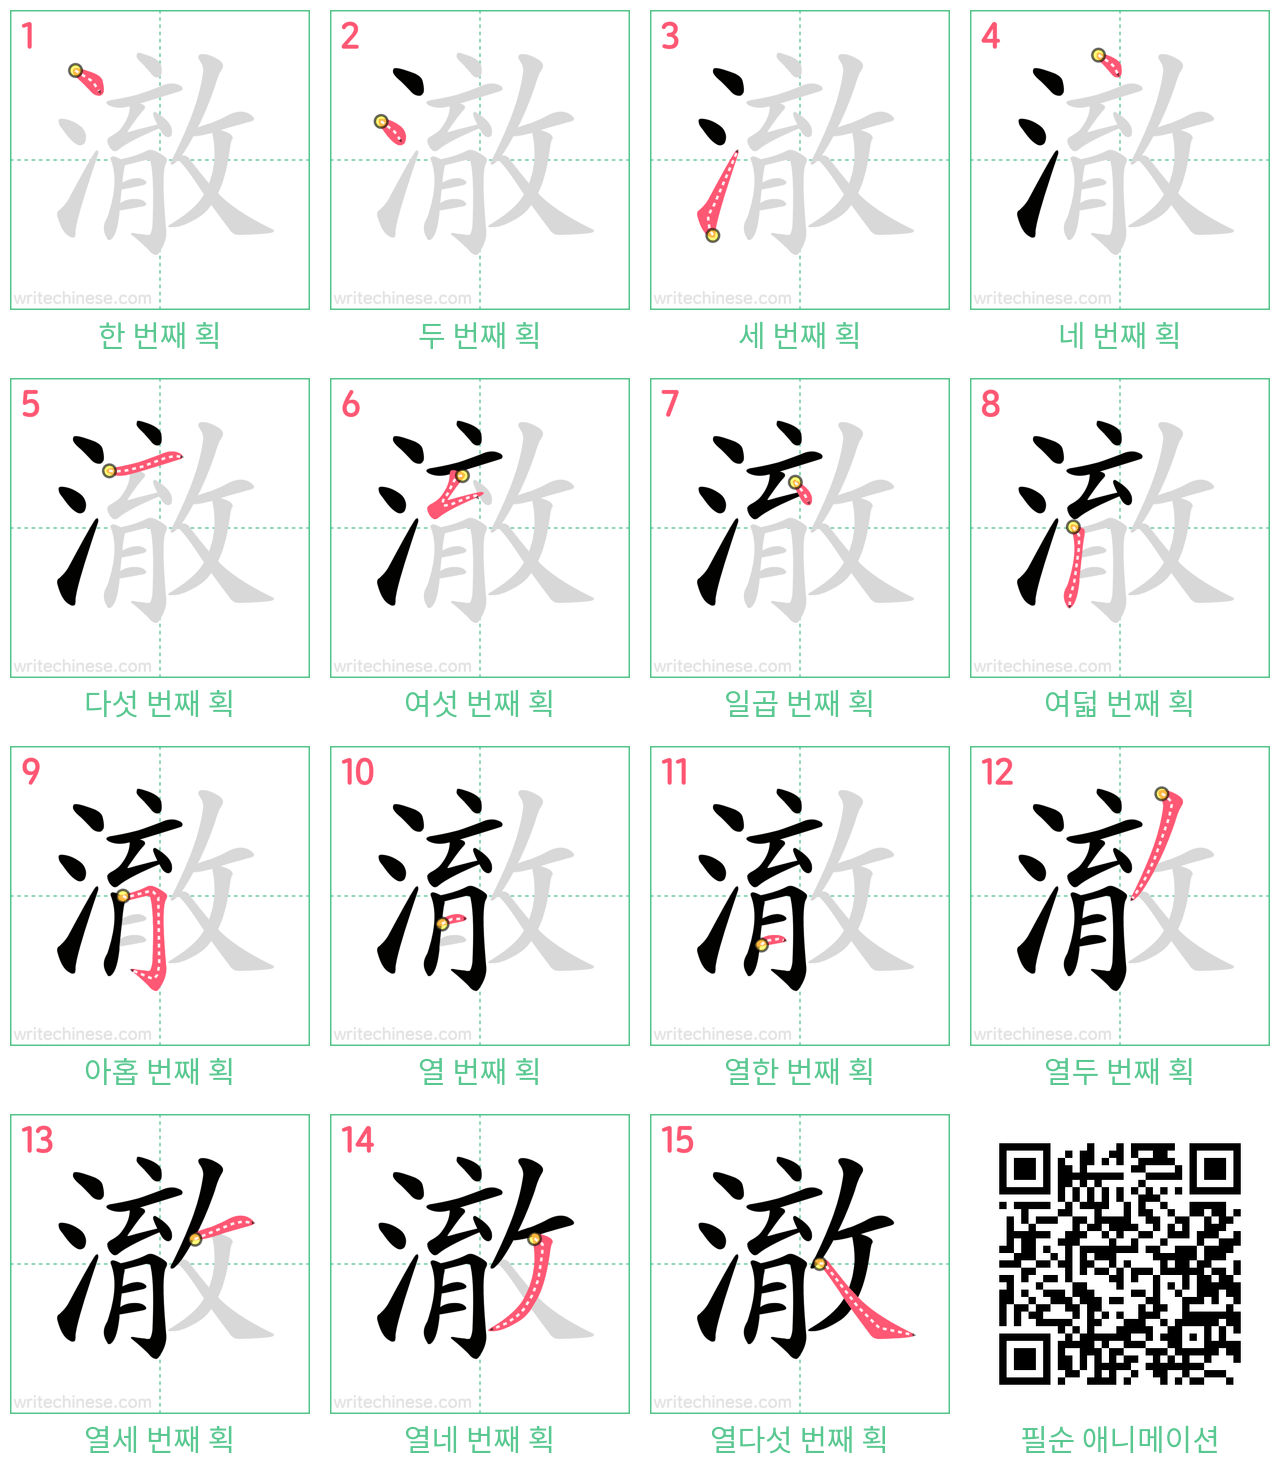 澈 step-by-step stroke order diagrams